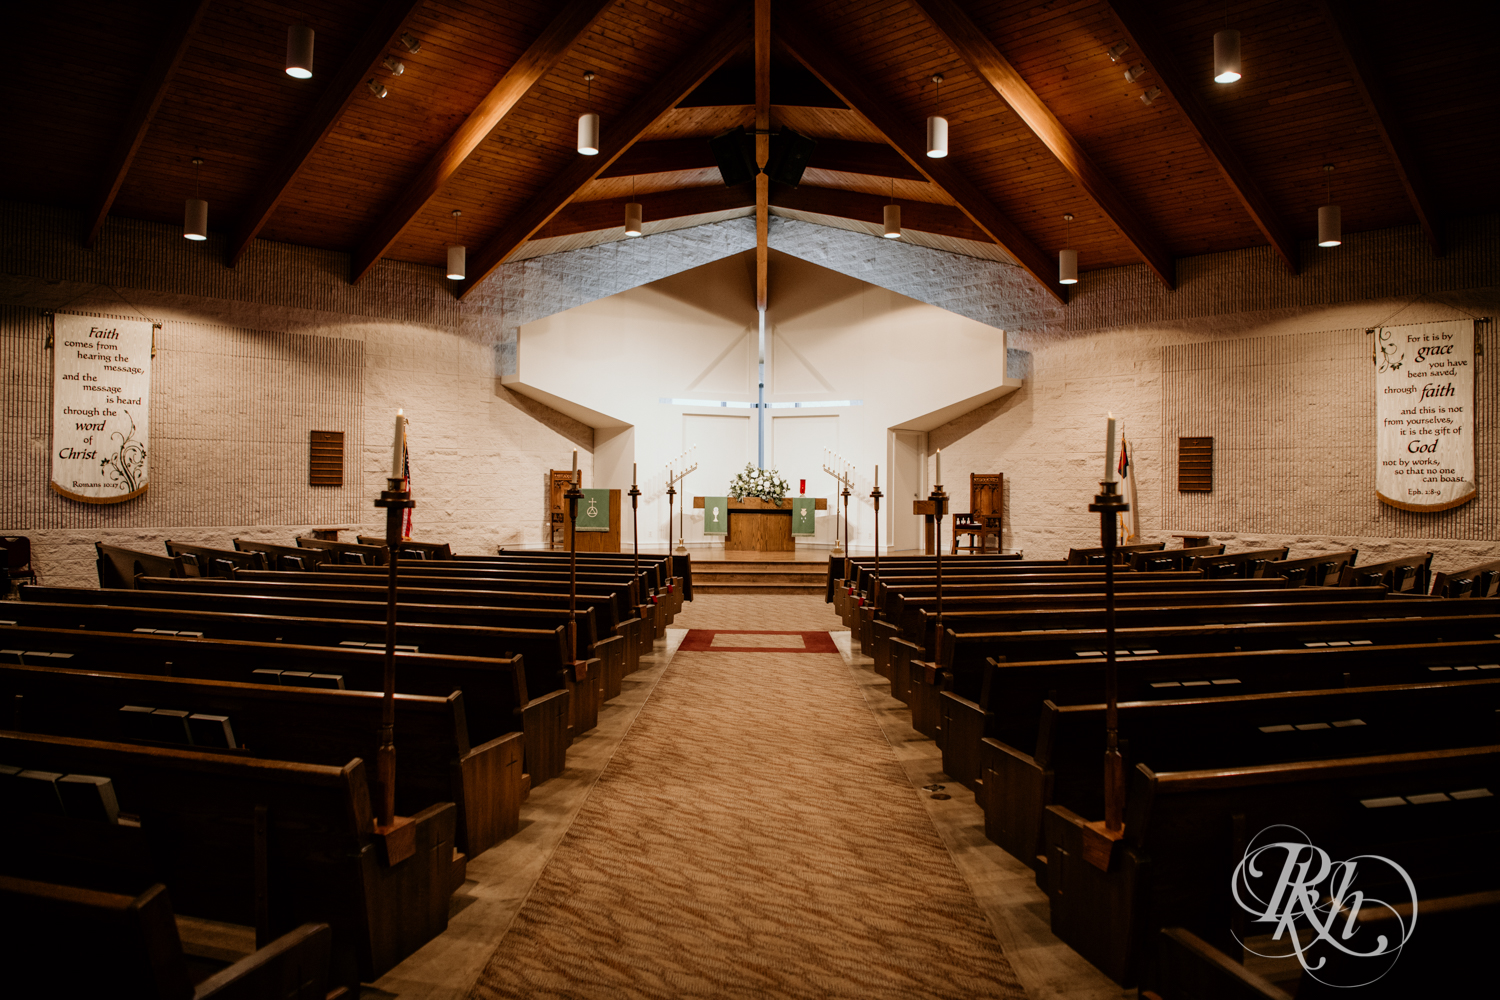 Indoor church winter wedding ceremony setup in Golden Valley, Minnesota.